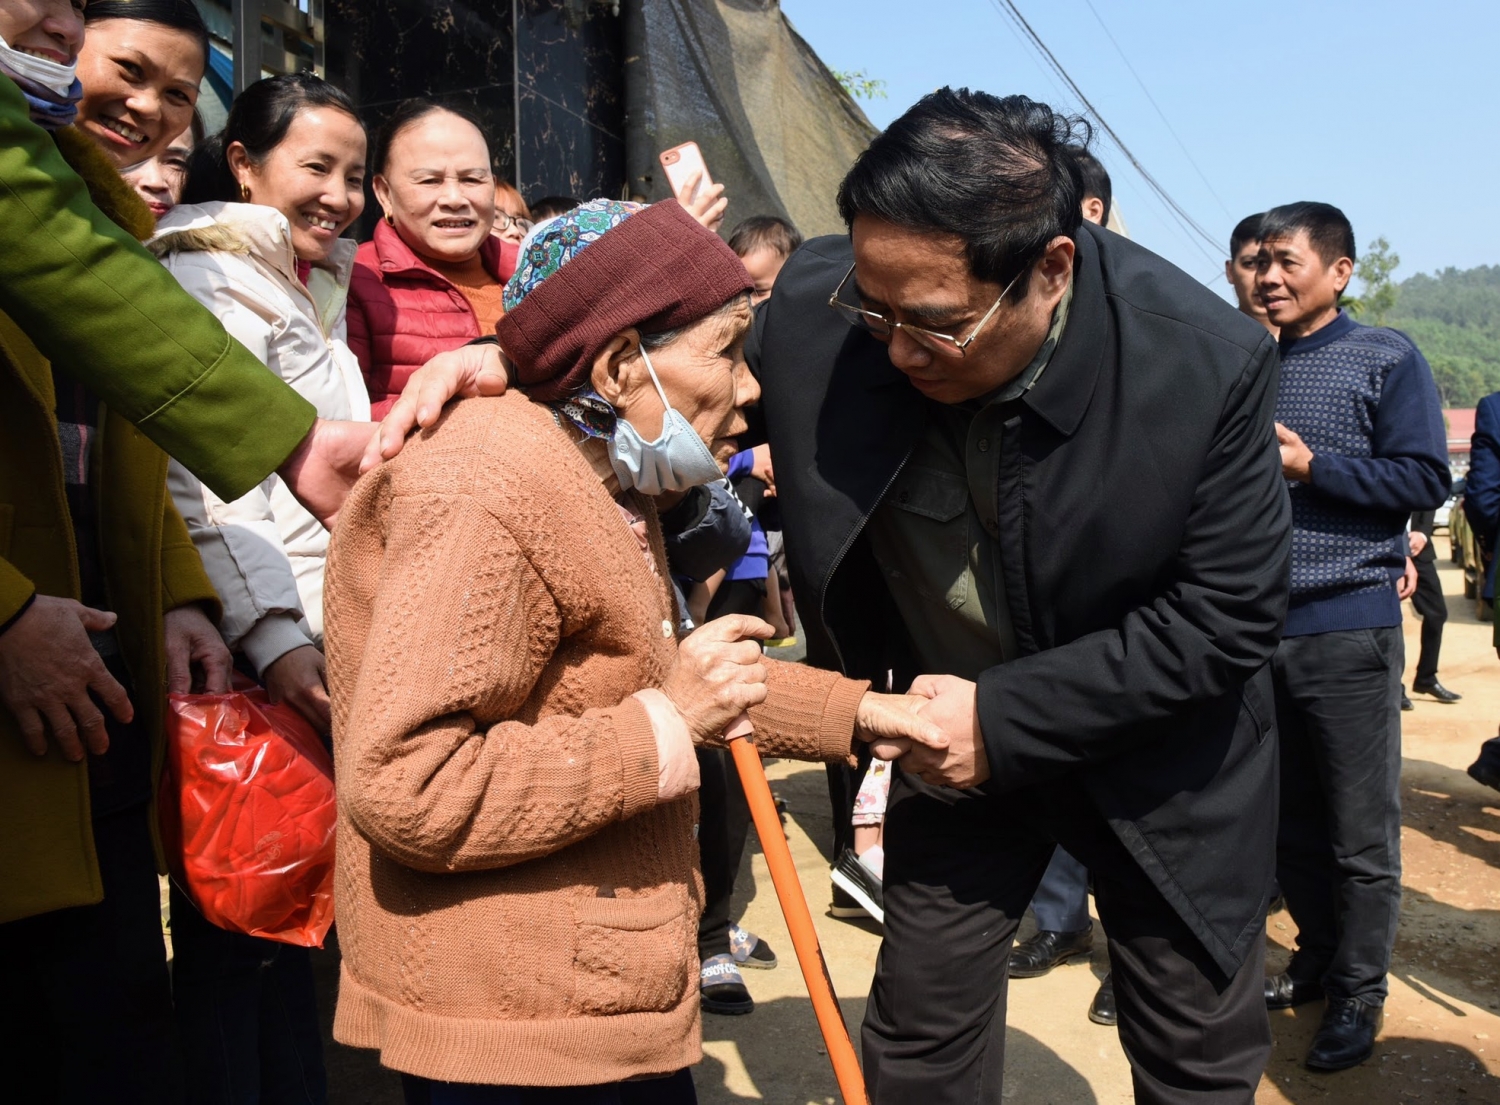 Thủ tướng kiểm tra, đôn đốc dự án cao tốc Tuyên Quang - Phú Thọ, chúc Tết công nhân và người dân khu tái định cư